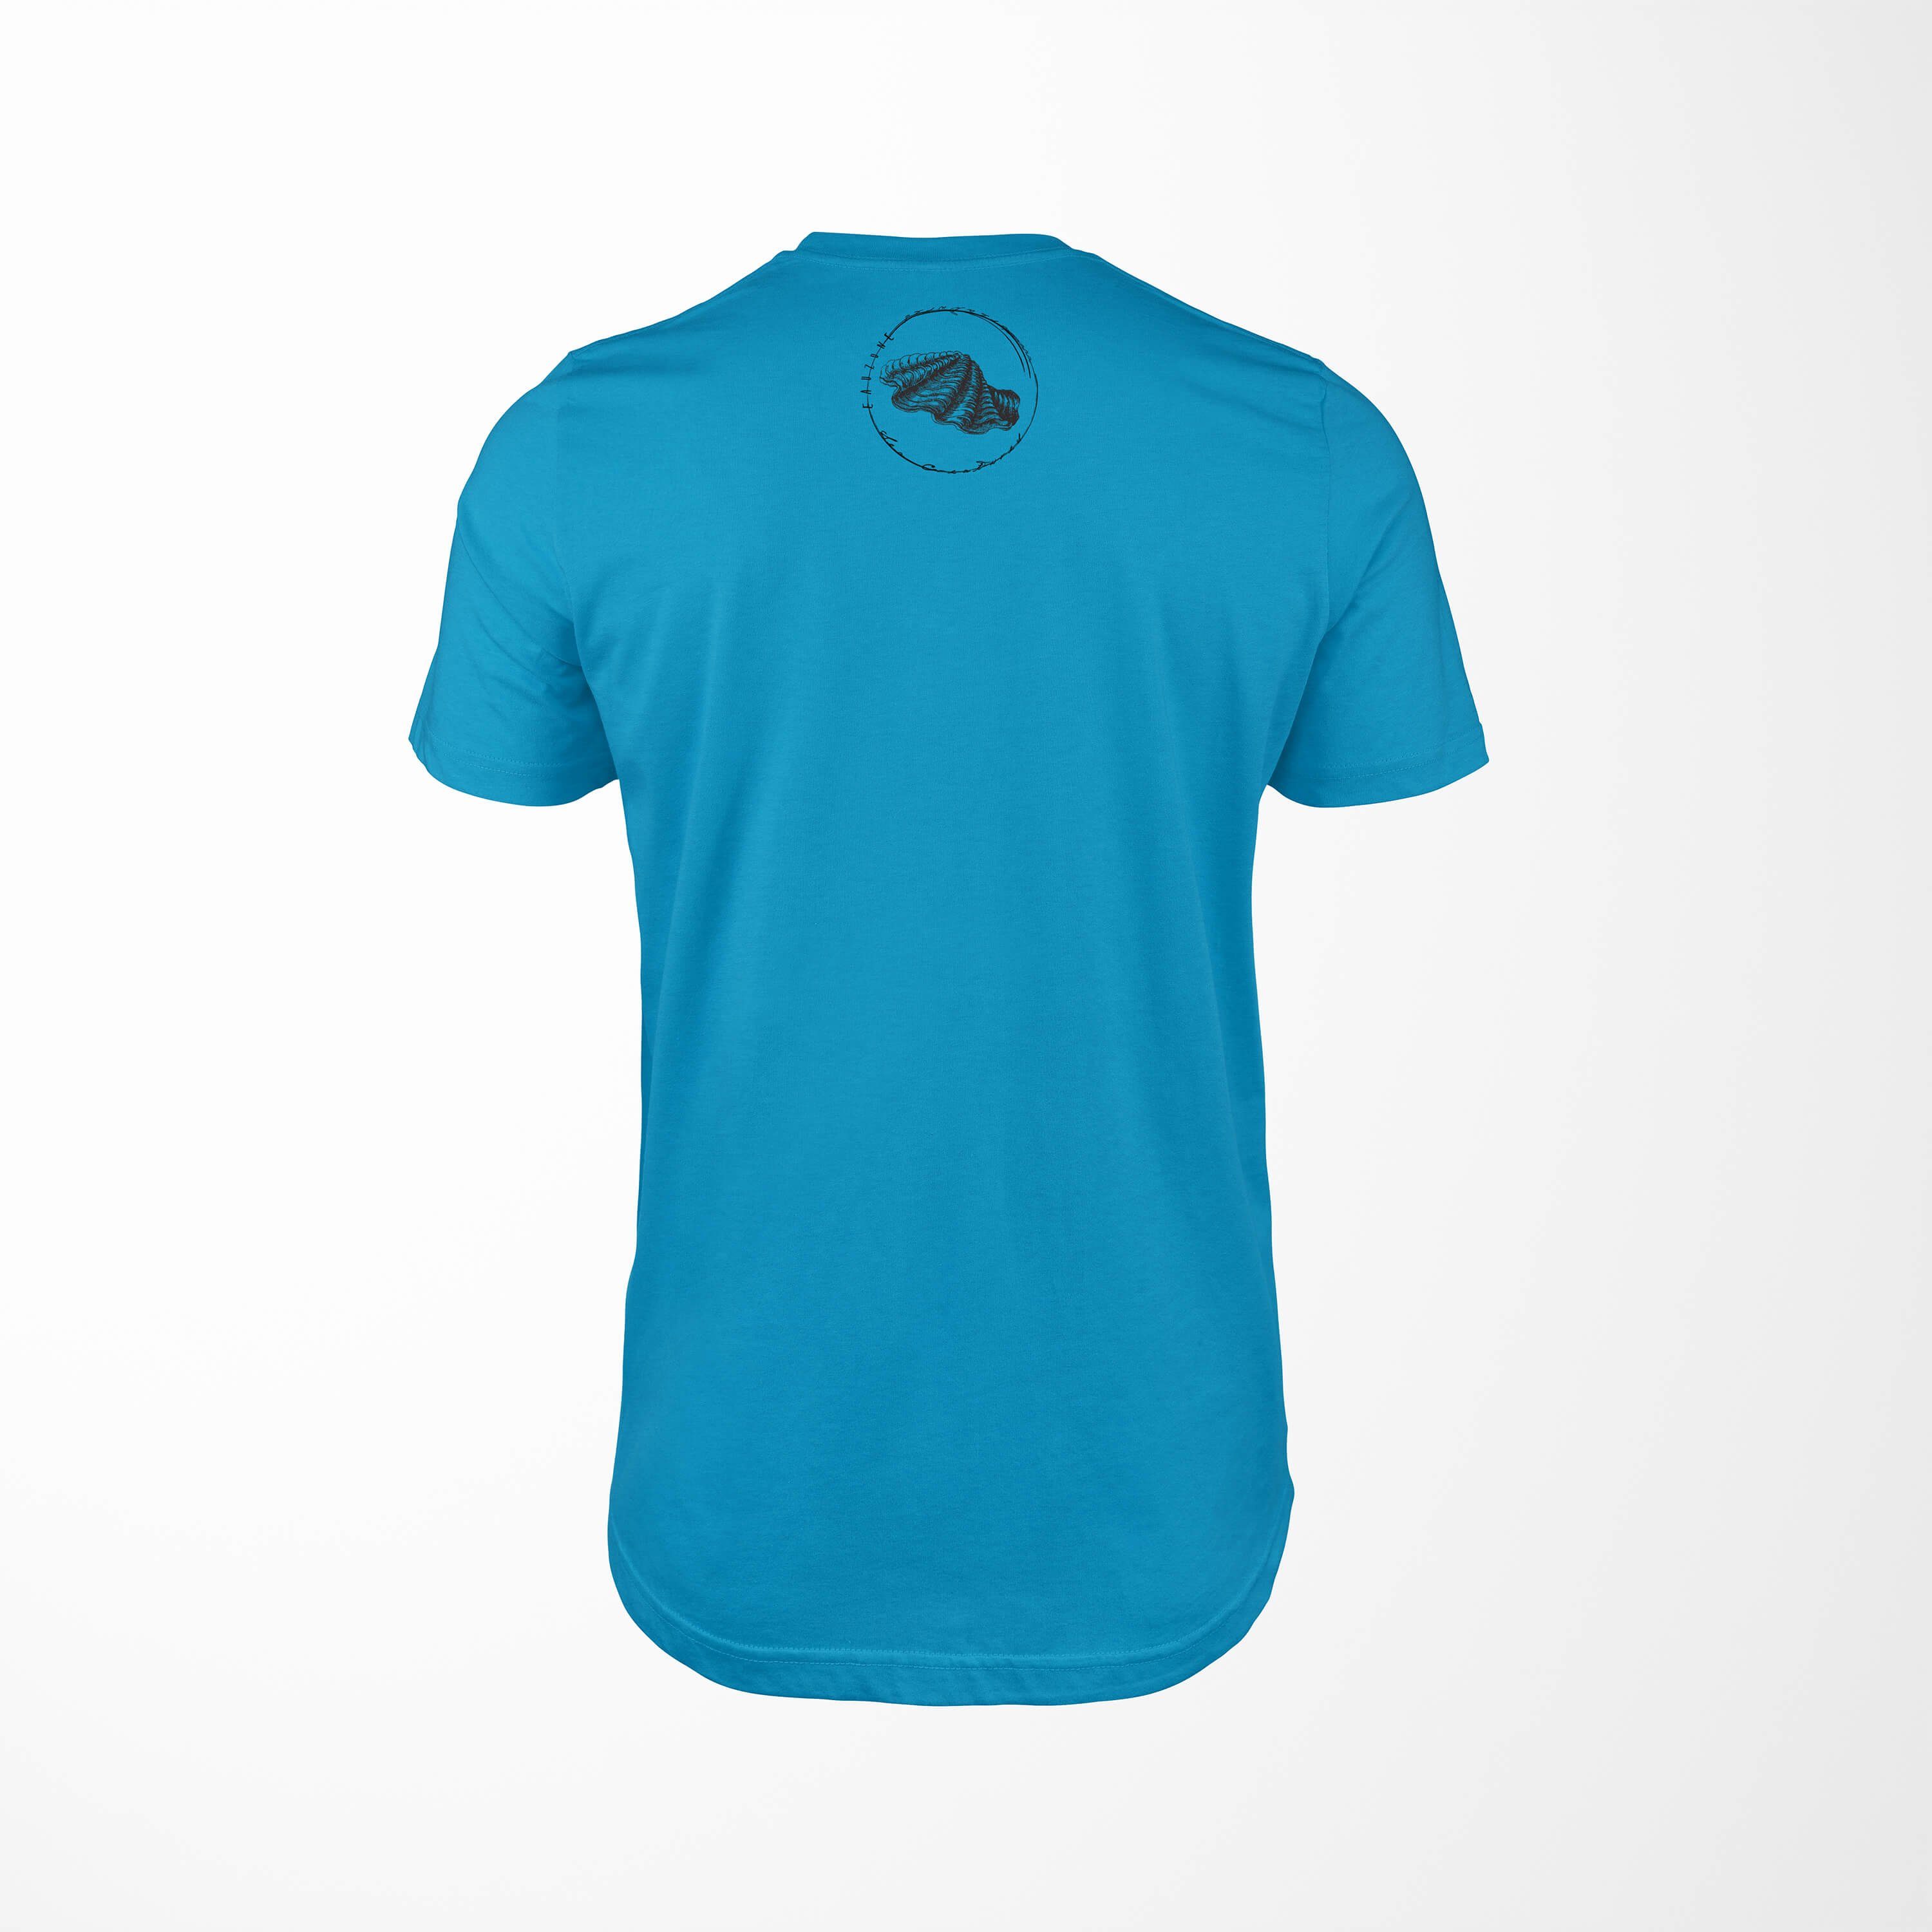 und Struktur Sea T-Shirt Tiefsee - Art T-Shirt Fische sportlicher Serie: Schnitt / Sea Creatures, feine Sinus 088 Atoll